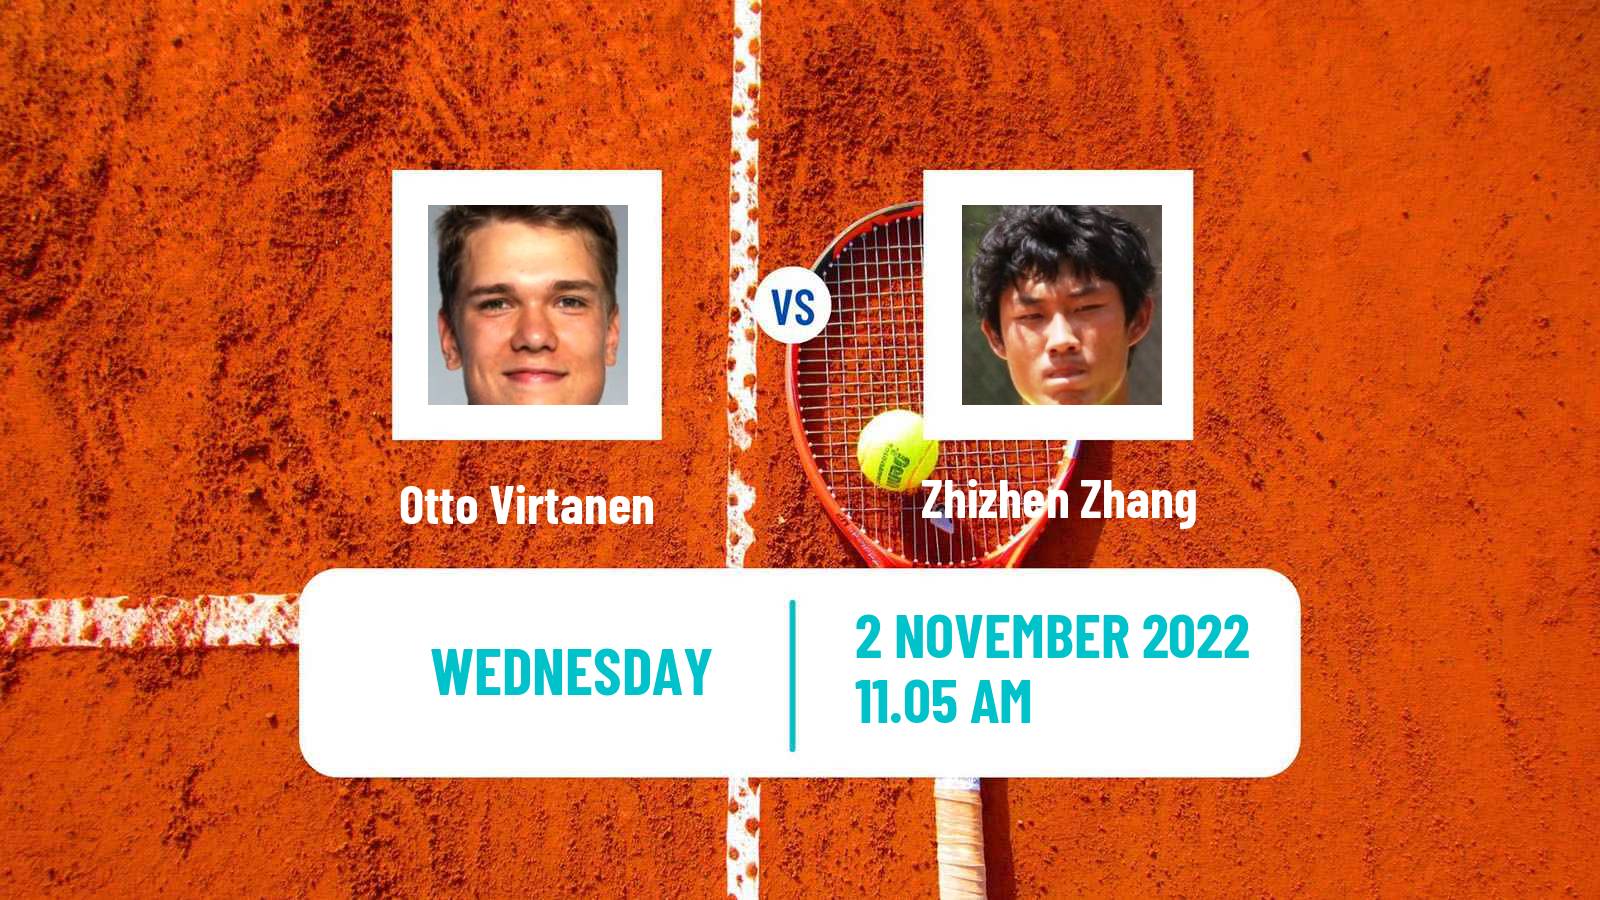 Tennis ATP Challenger Otto Virtanen - Zhizhen Zhang